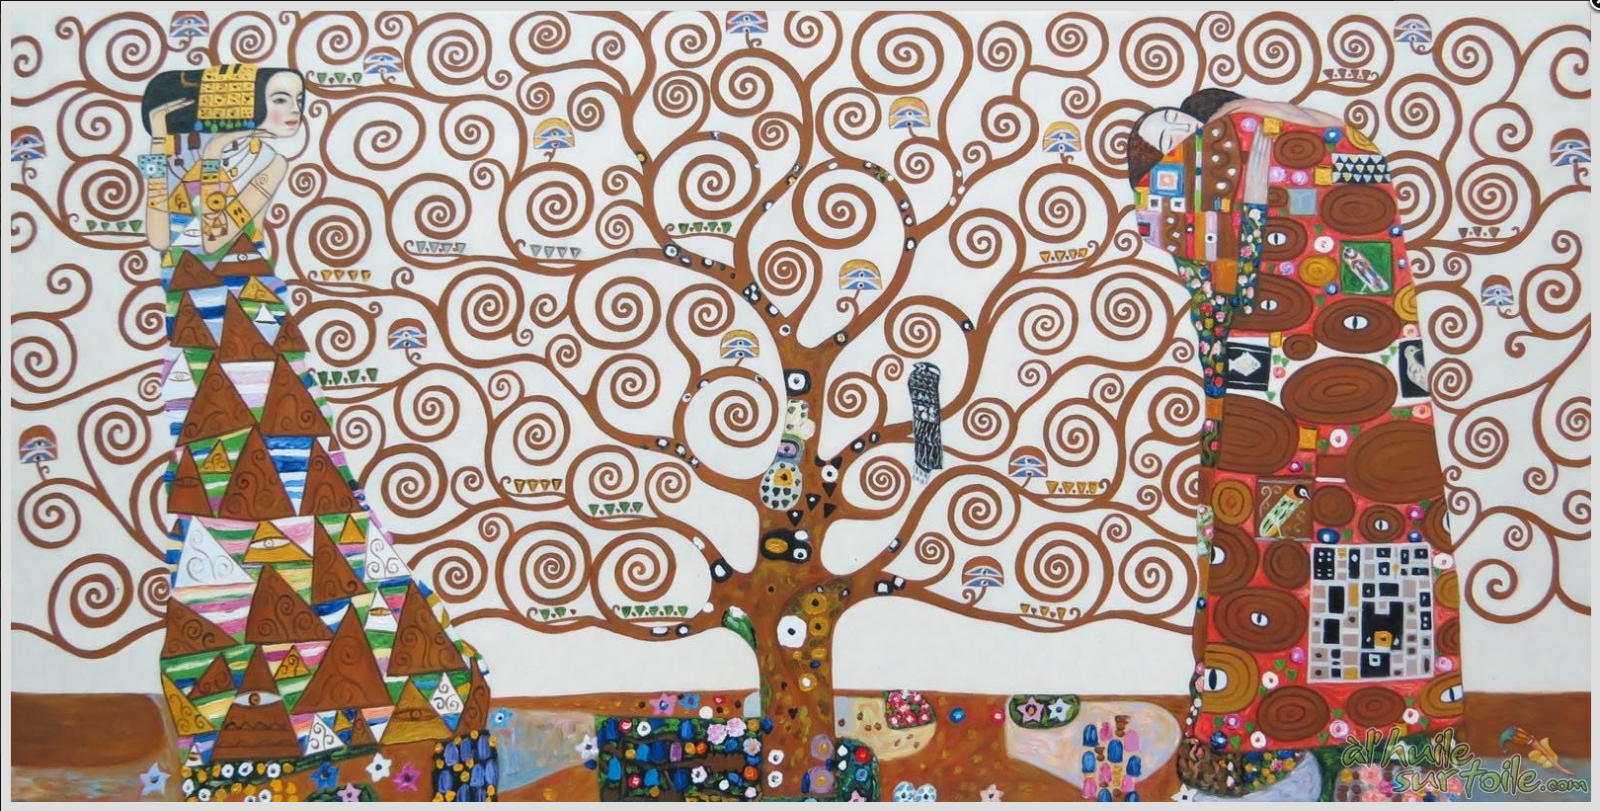 Le symbolique - L'Arbre de vie - Gustav Klimt